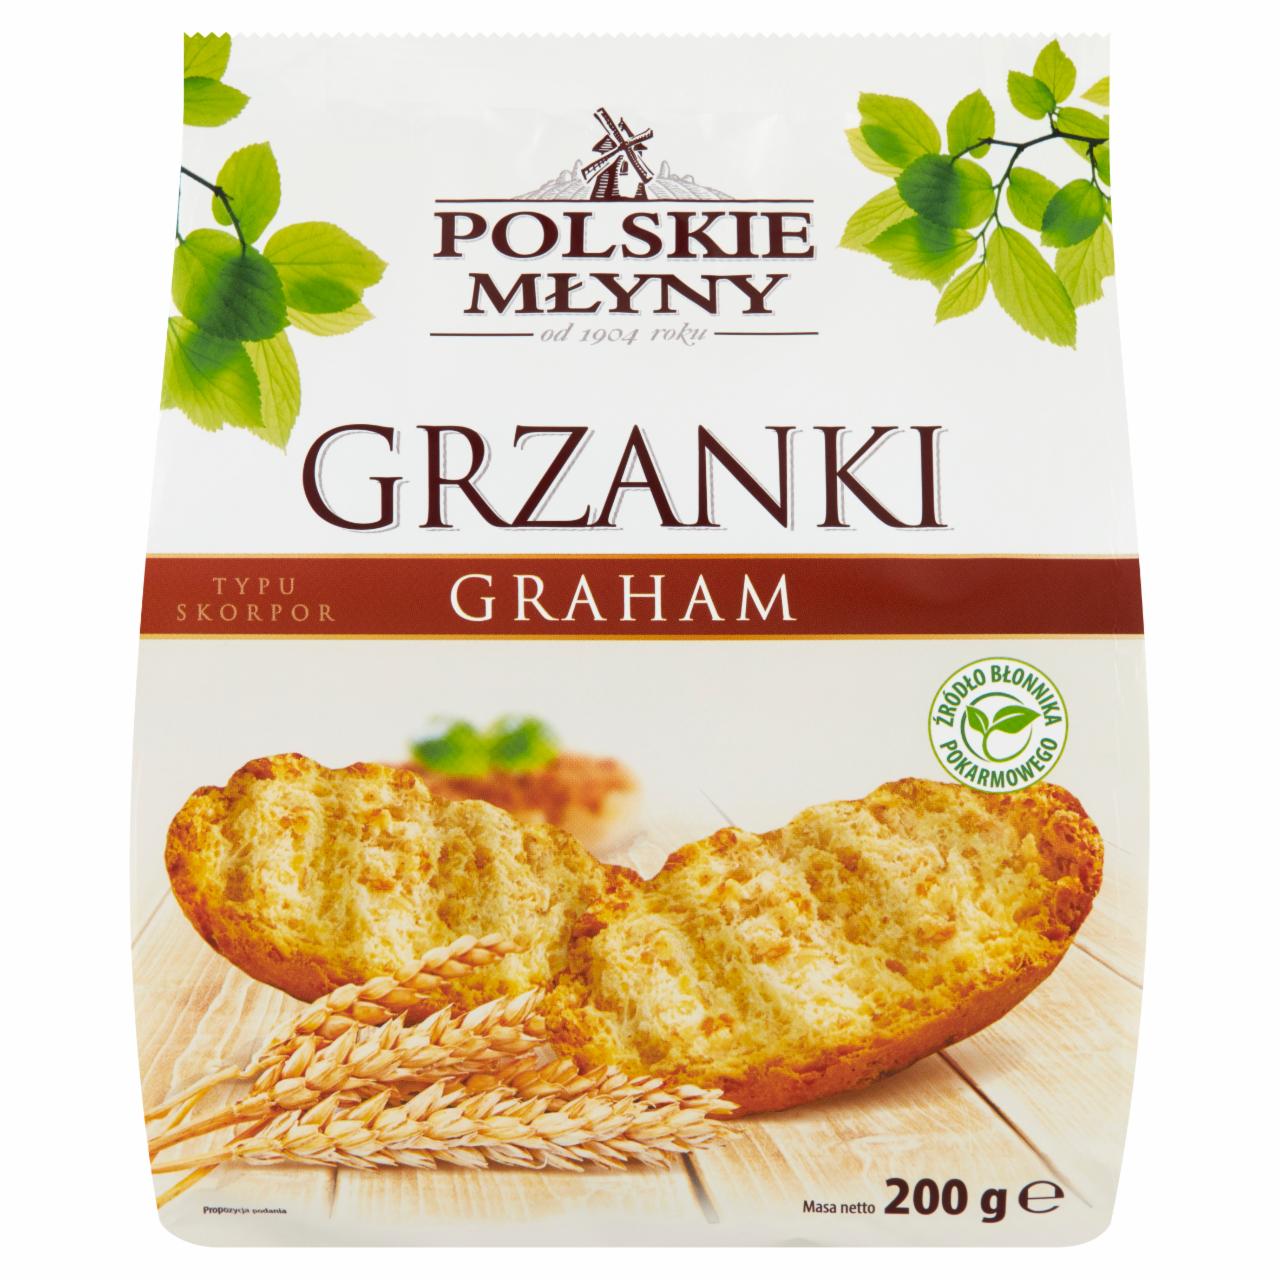 Zdjęcia - Polskie Młyny Grzanki graham typu skorpor 200 g